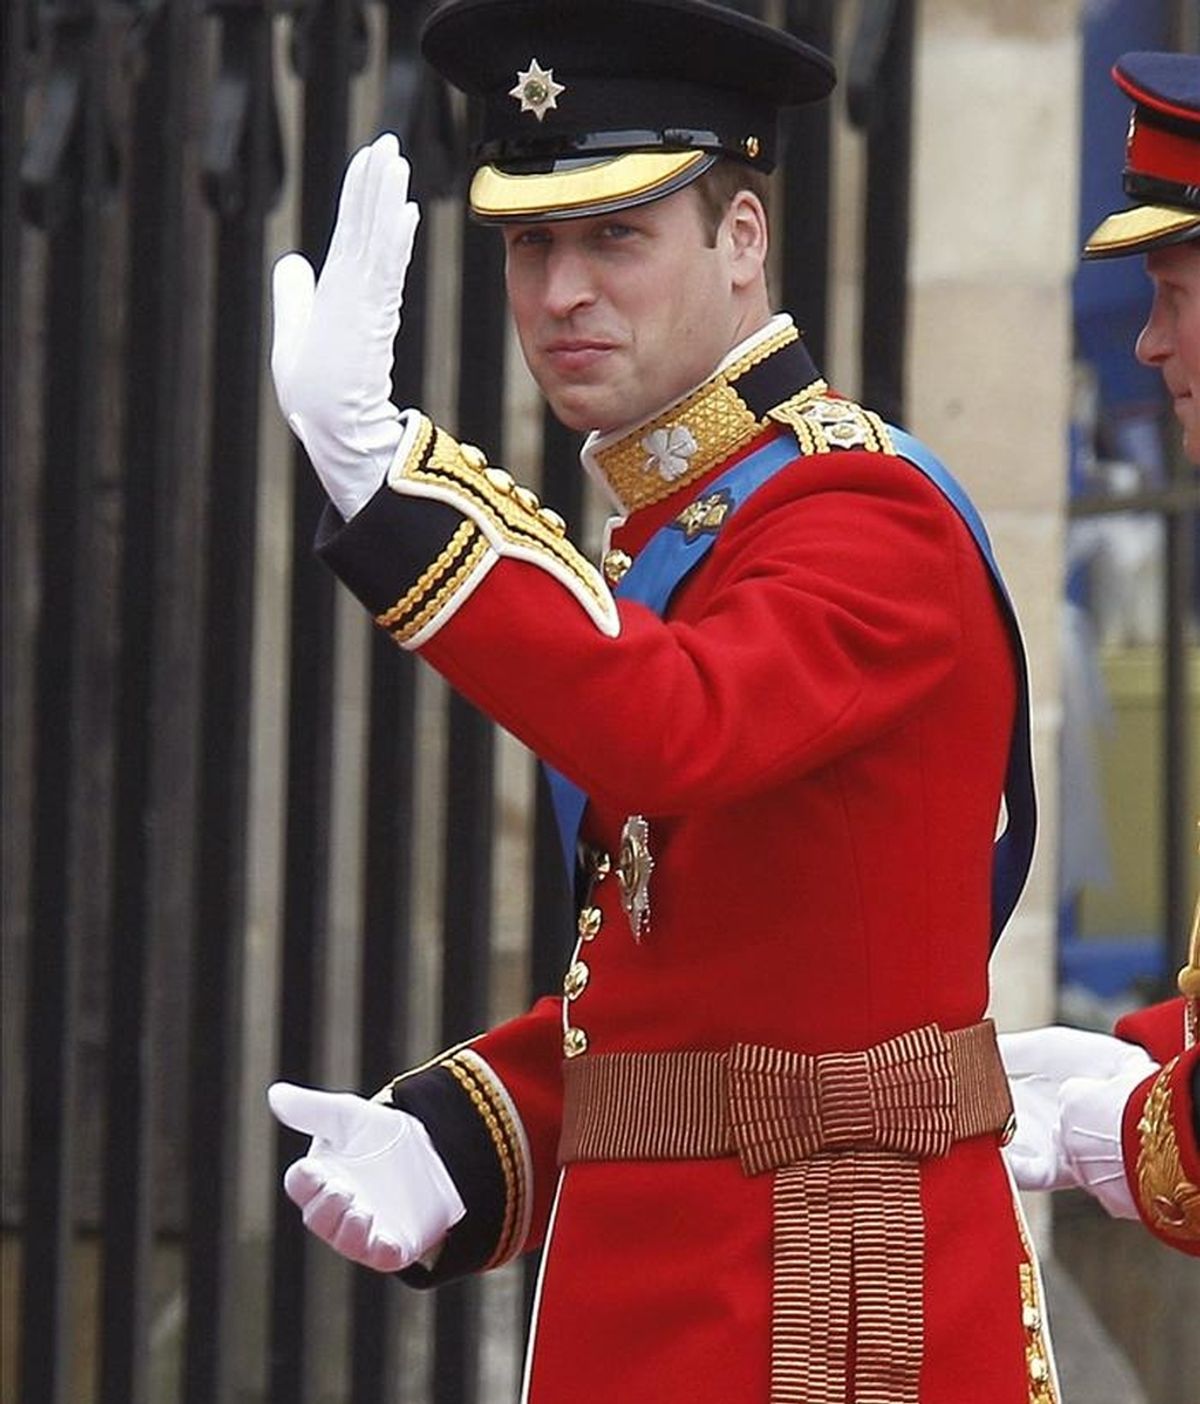 El príncipe Guillermo de Inglaterra saluda a su llegada a la Abadía de Westminster, en Londres, en donde hoy contraerá matrimonio con su prometida, Kate Middleton. EFE